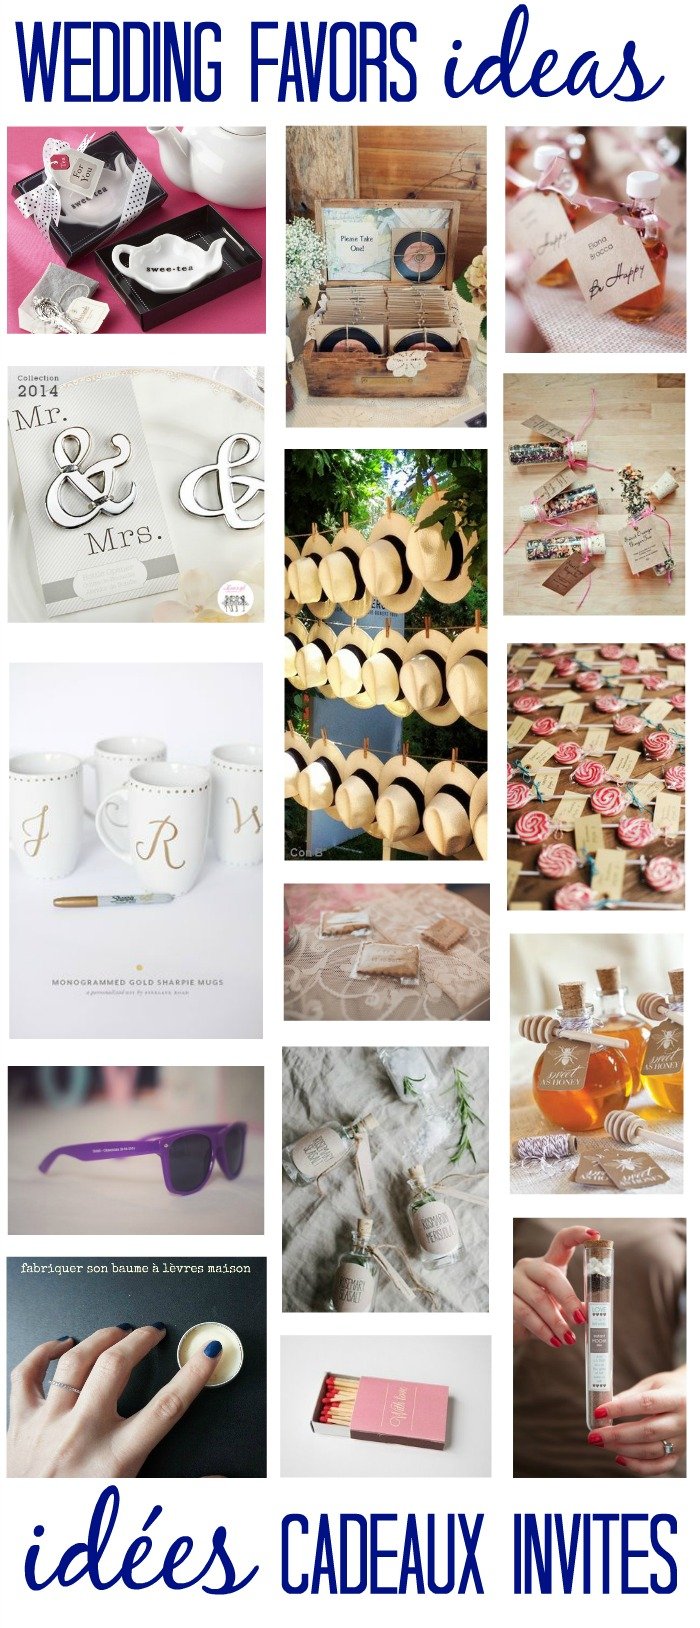 Idées cadeaux d'invités / wedding favors ideas / publié sur withalovelikethat.fr